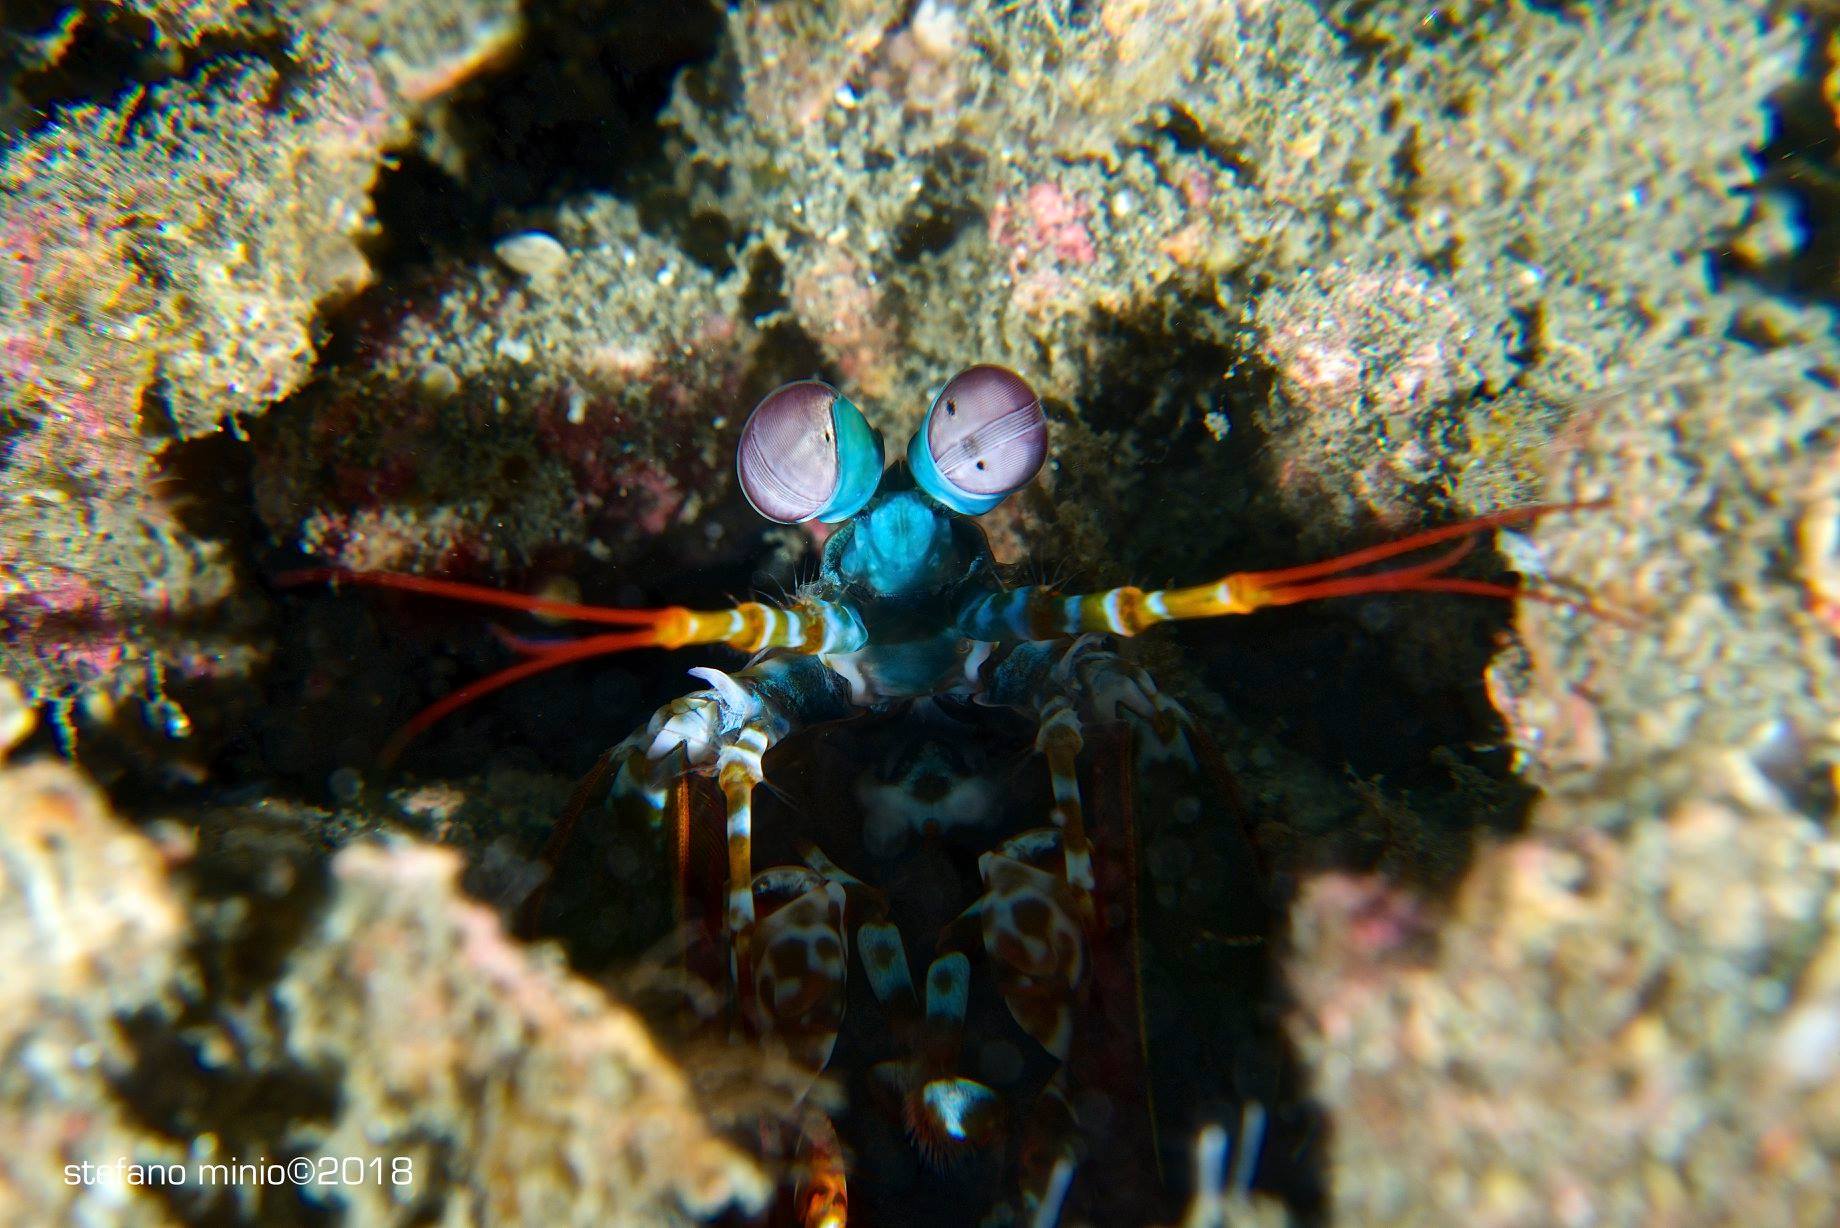 Mantis shrimp at Halmahera